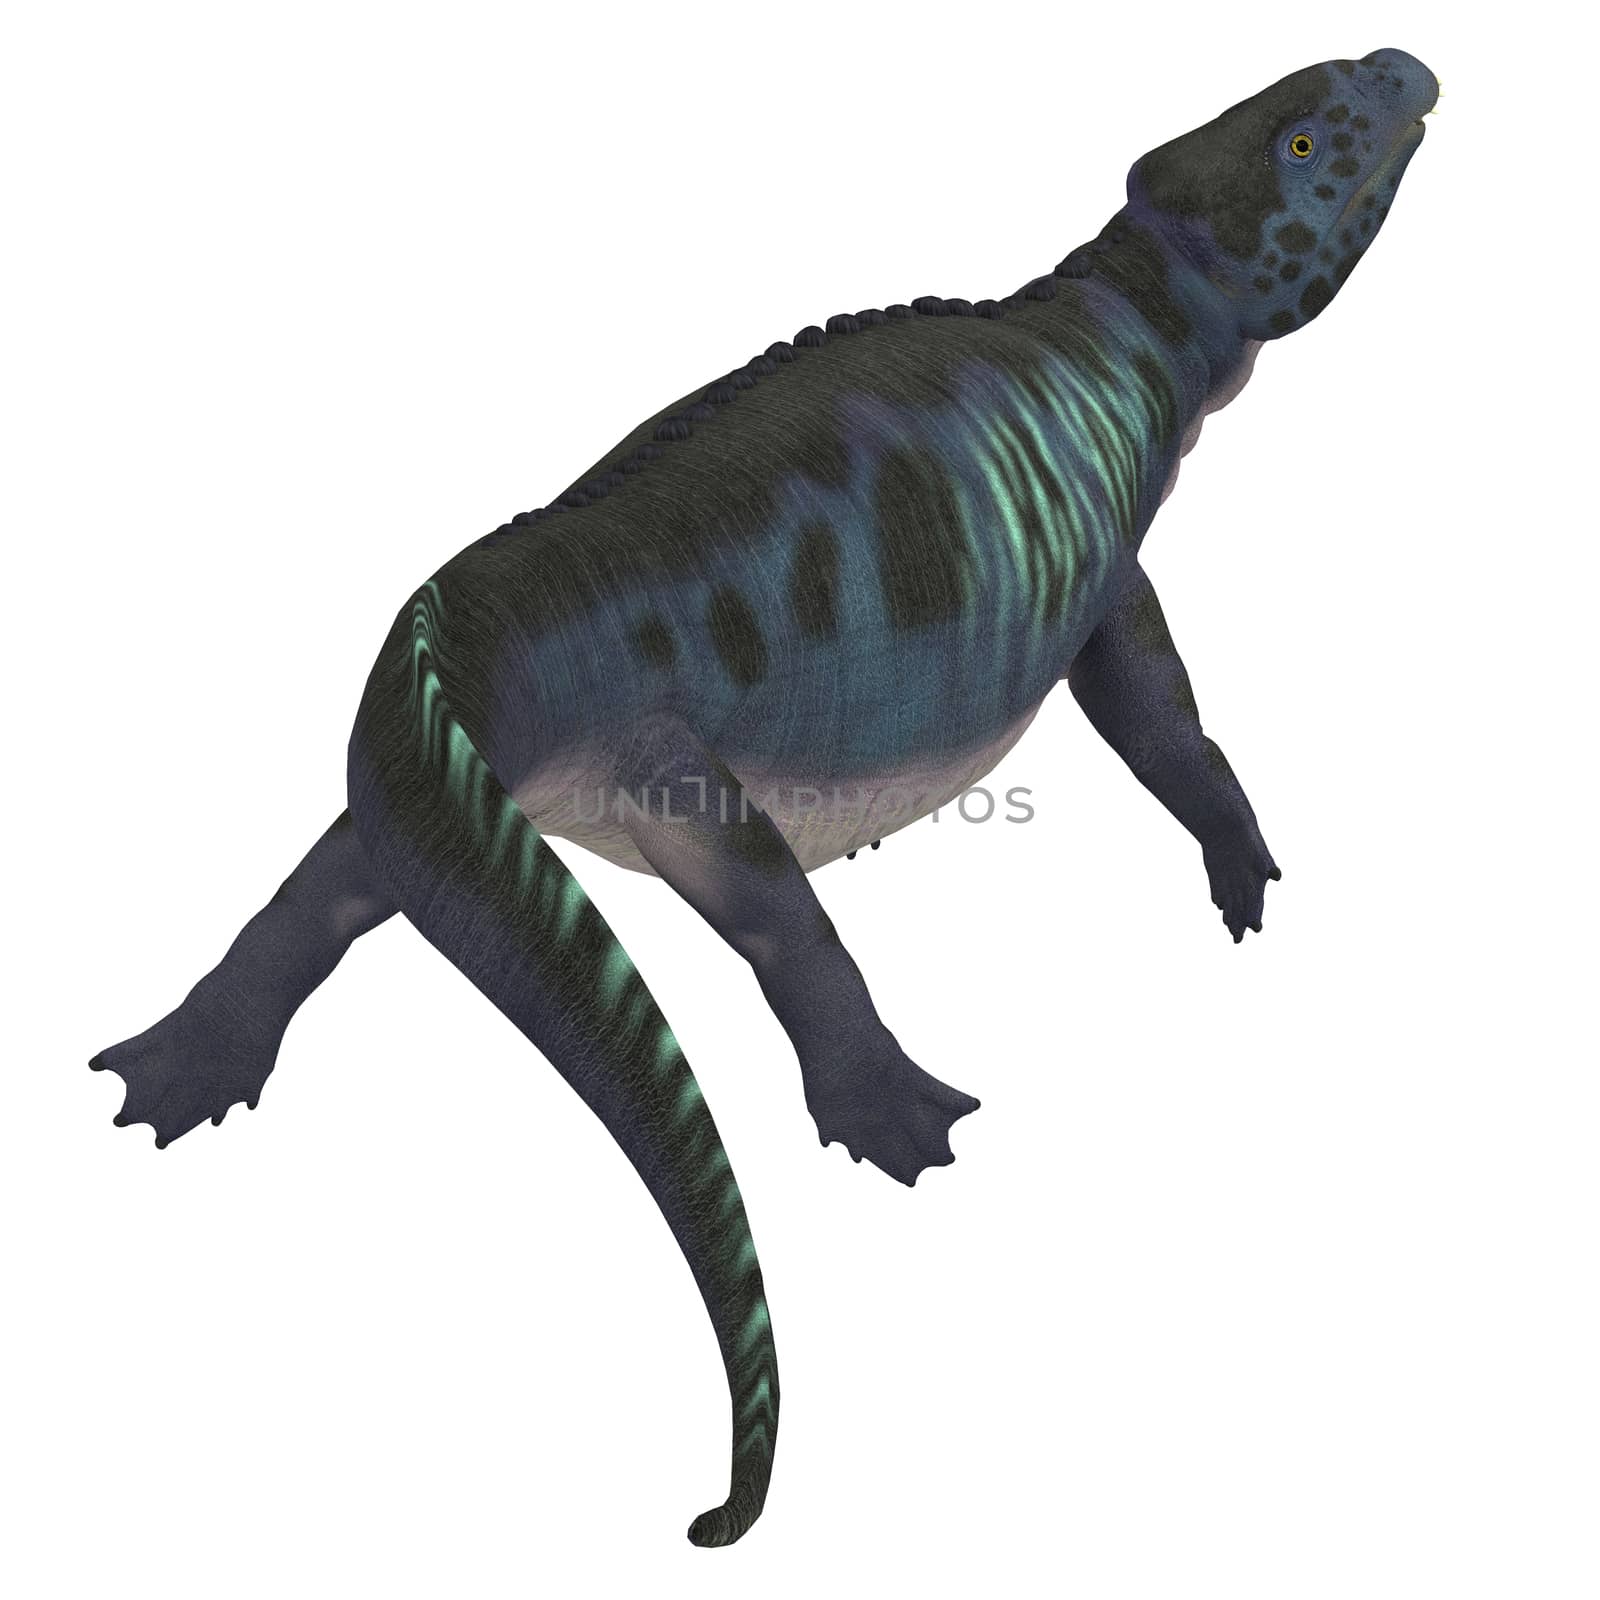 Placodus Dinosaur Tail by Catmando